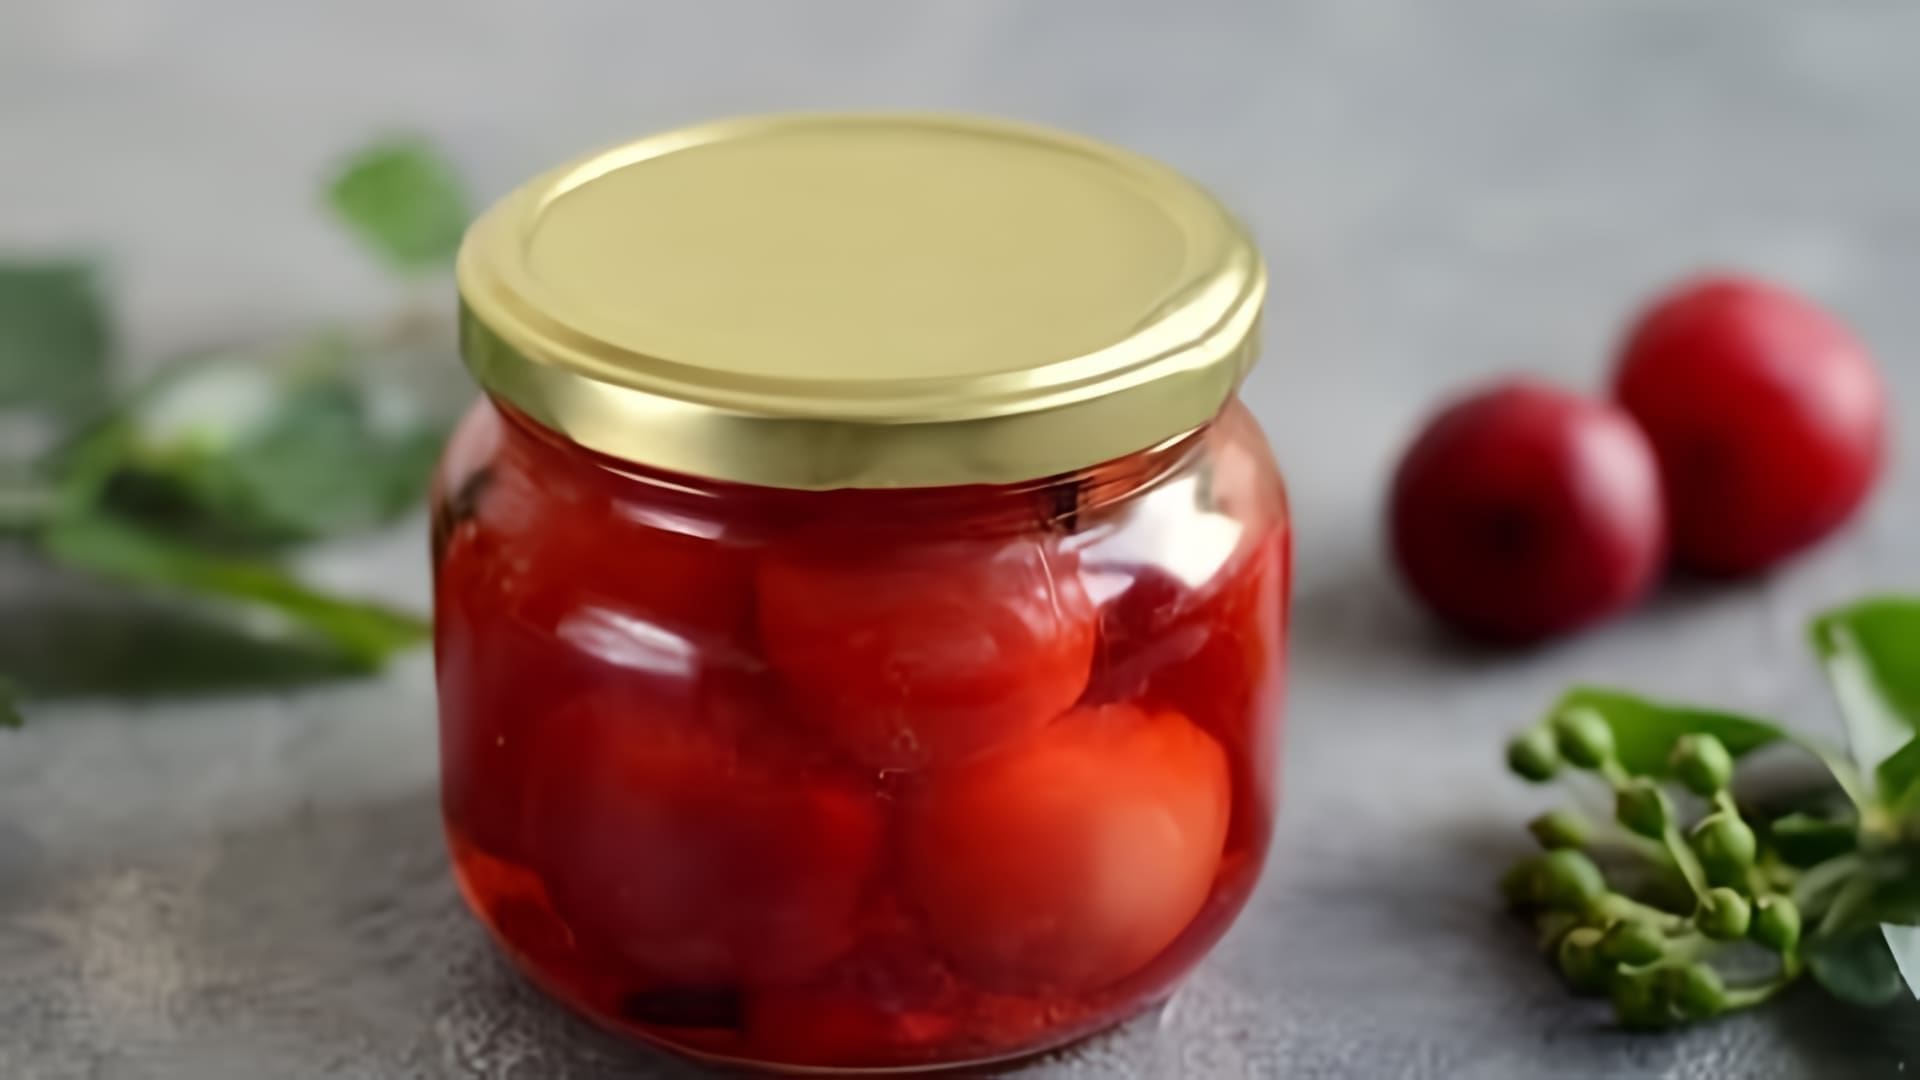 В этом видео демонстрируется процесс приготовления маринованных слив, которые выглядят и по вкусу напоминают оливки